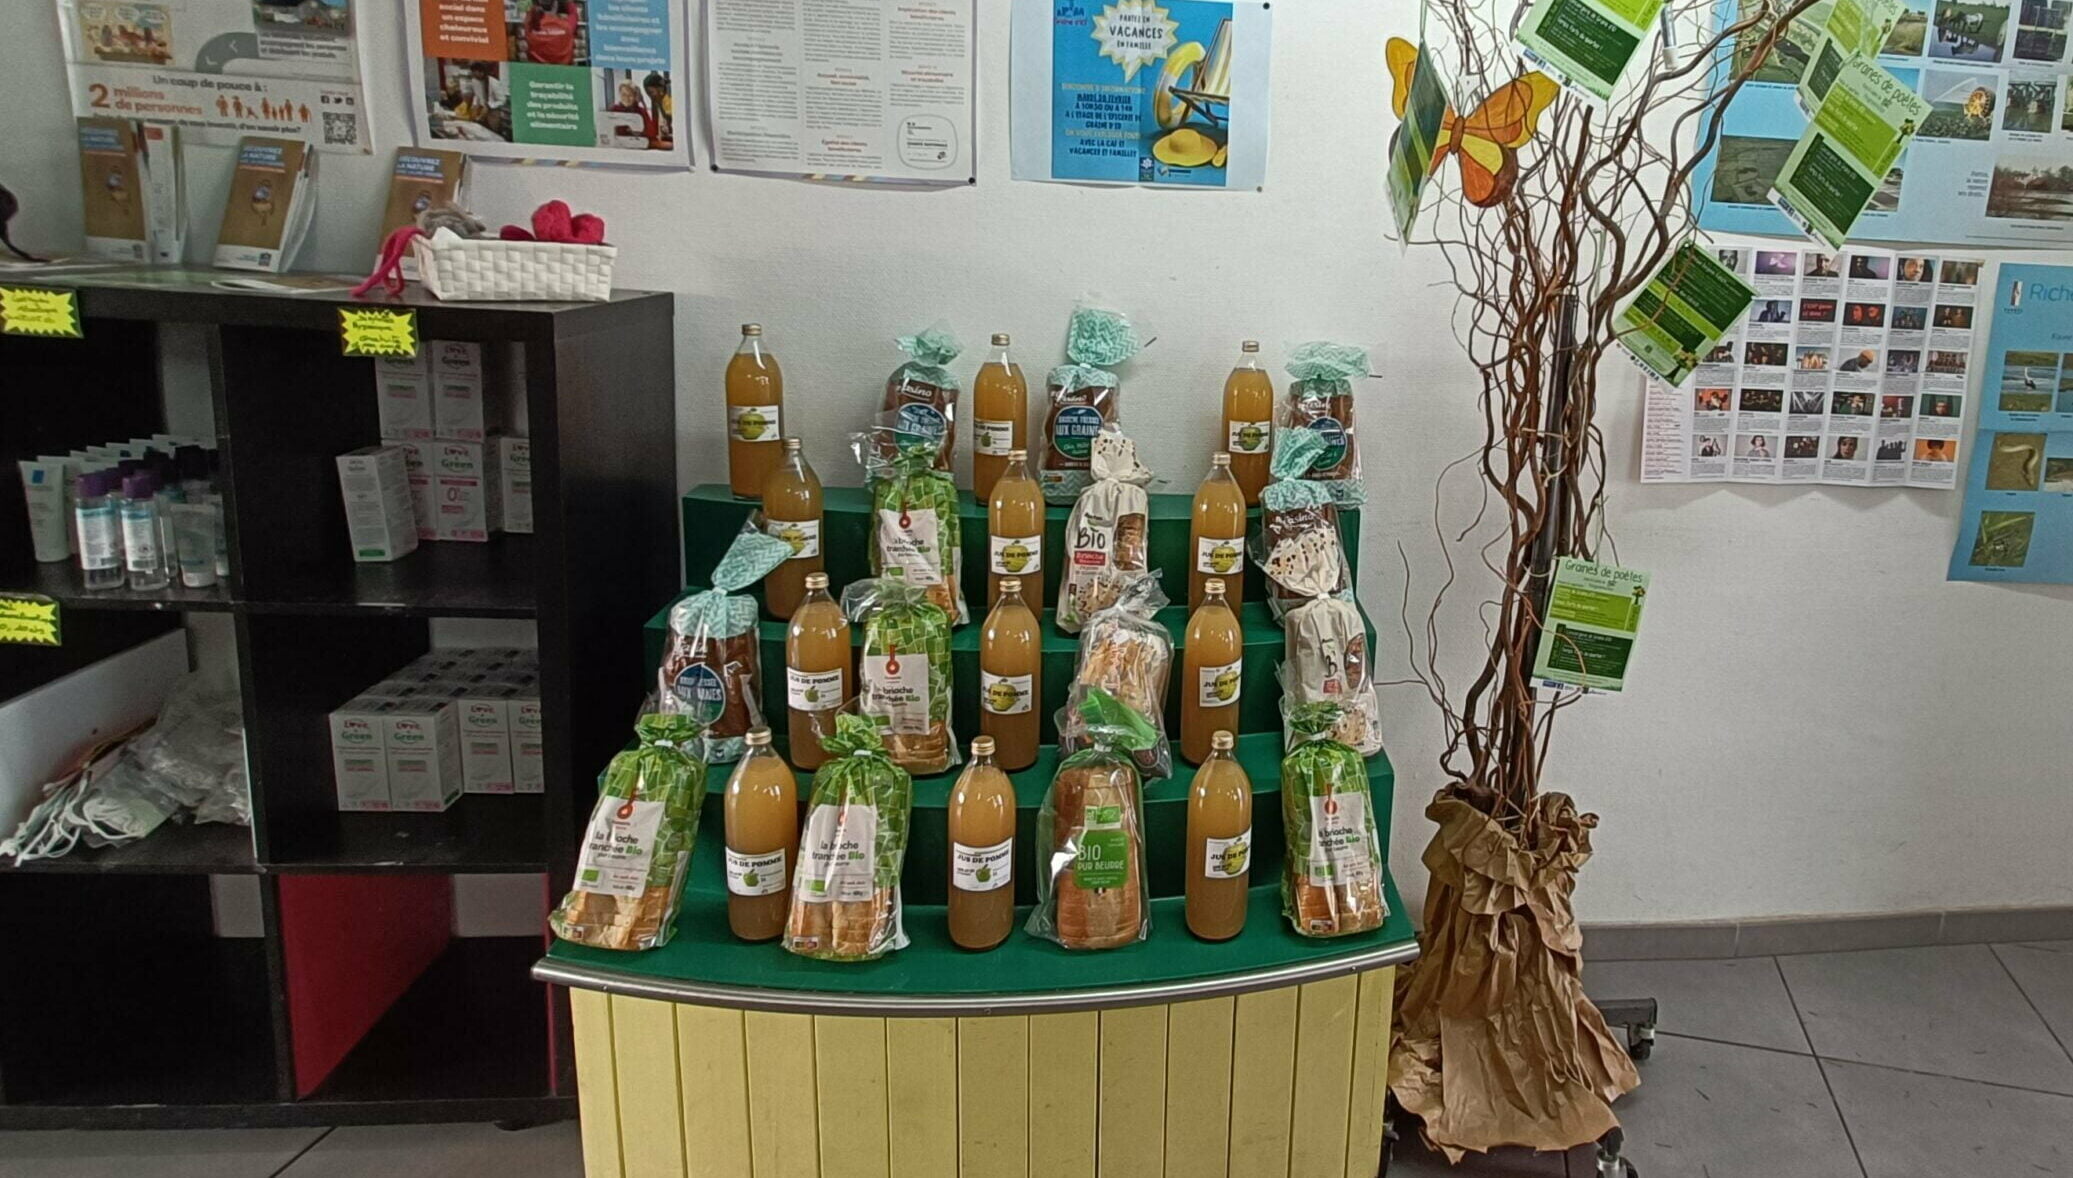 Vente de bouteilles de jus de pomme à l'épicerie solidaire